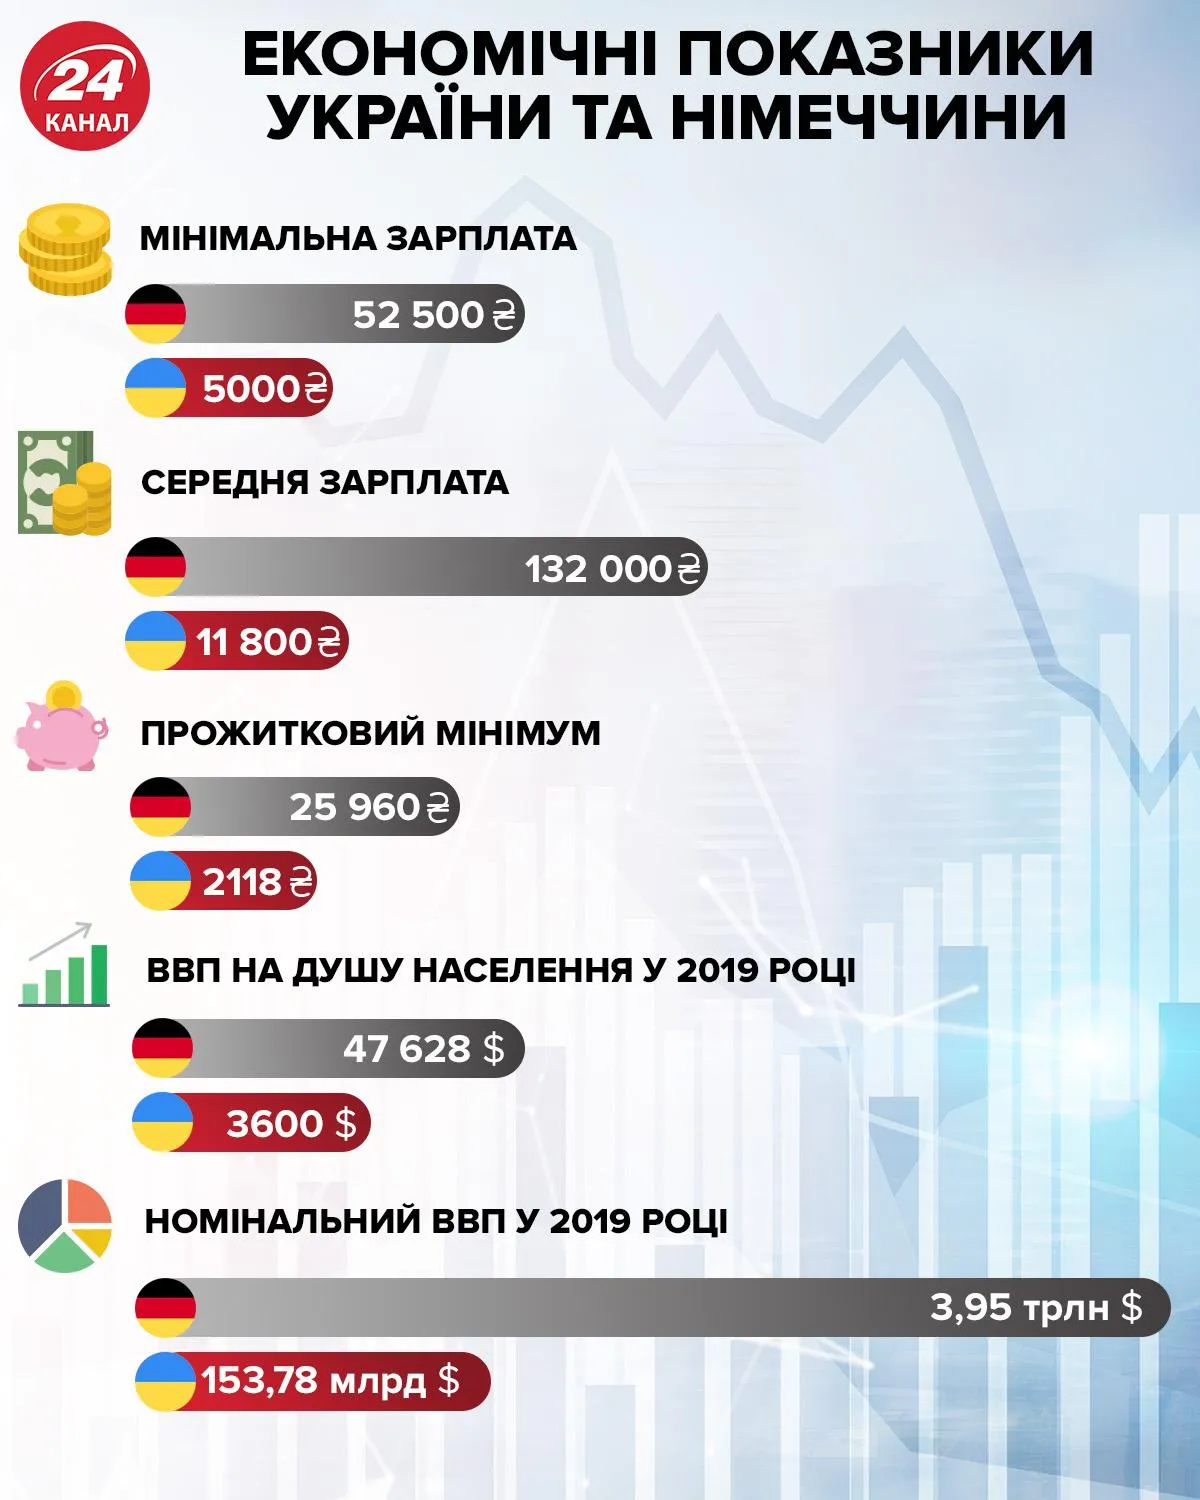 Економічні показники України та Німеччини інфографіка 24 каналу